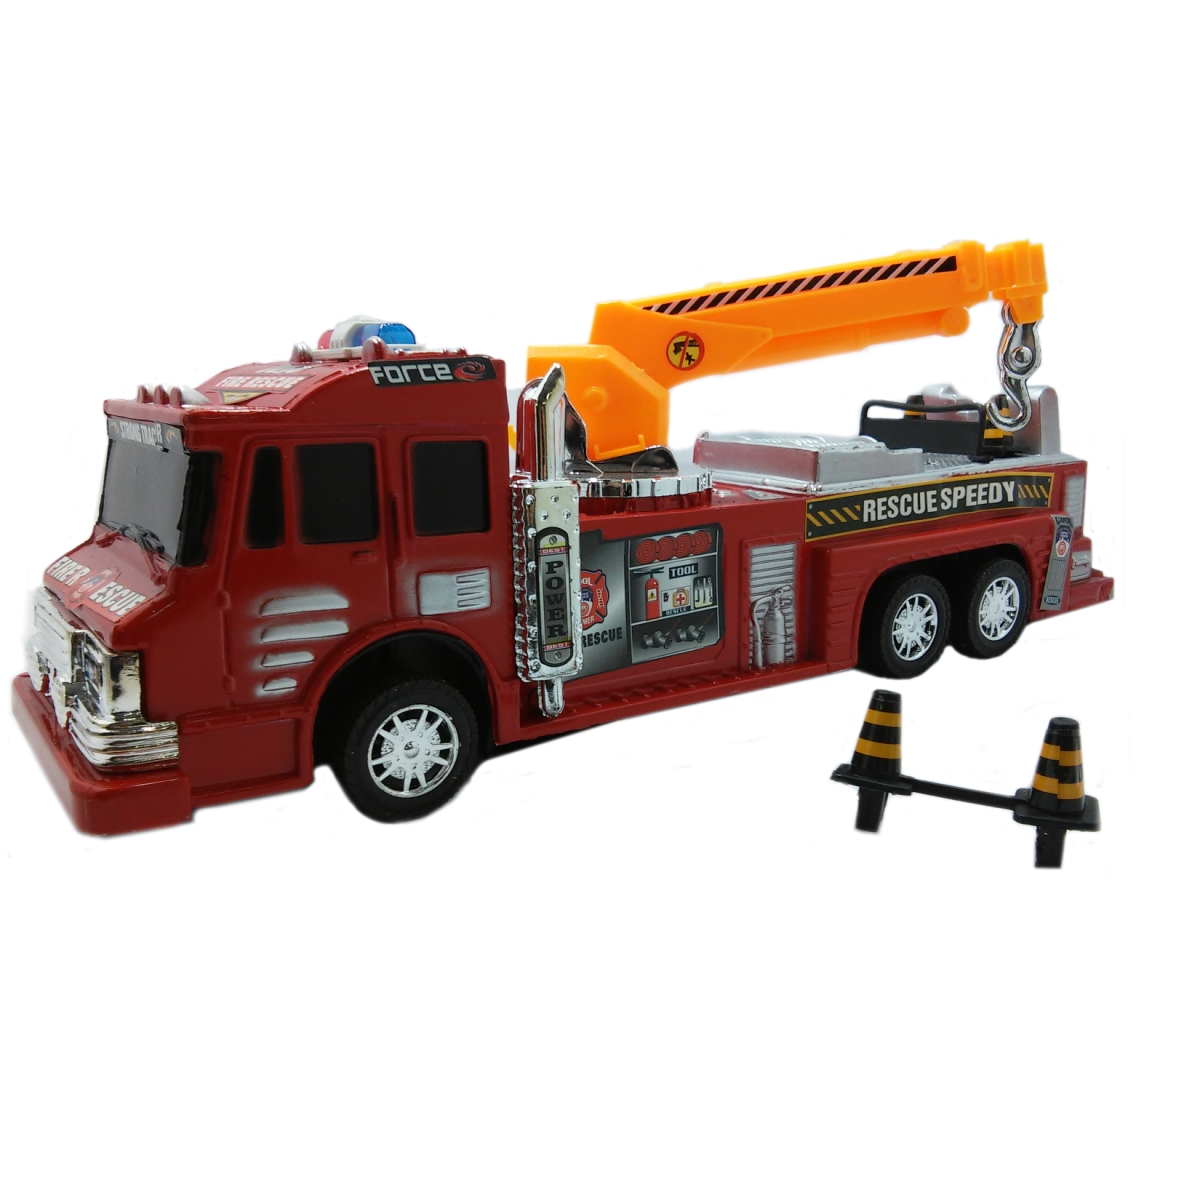 Caminhao Bombeiro Frico - New Toys - 34Cm Ba-15339 Truck Crane